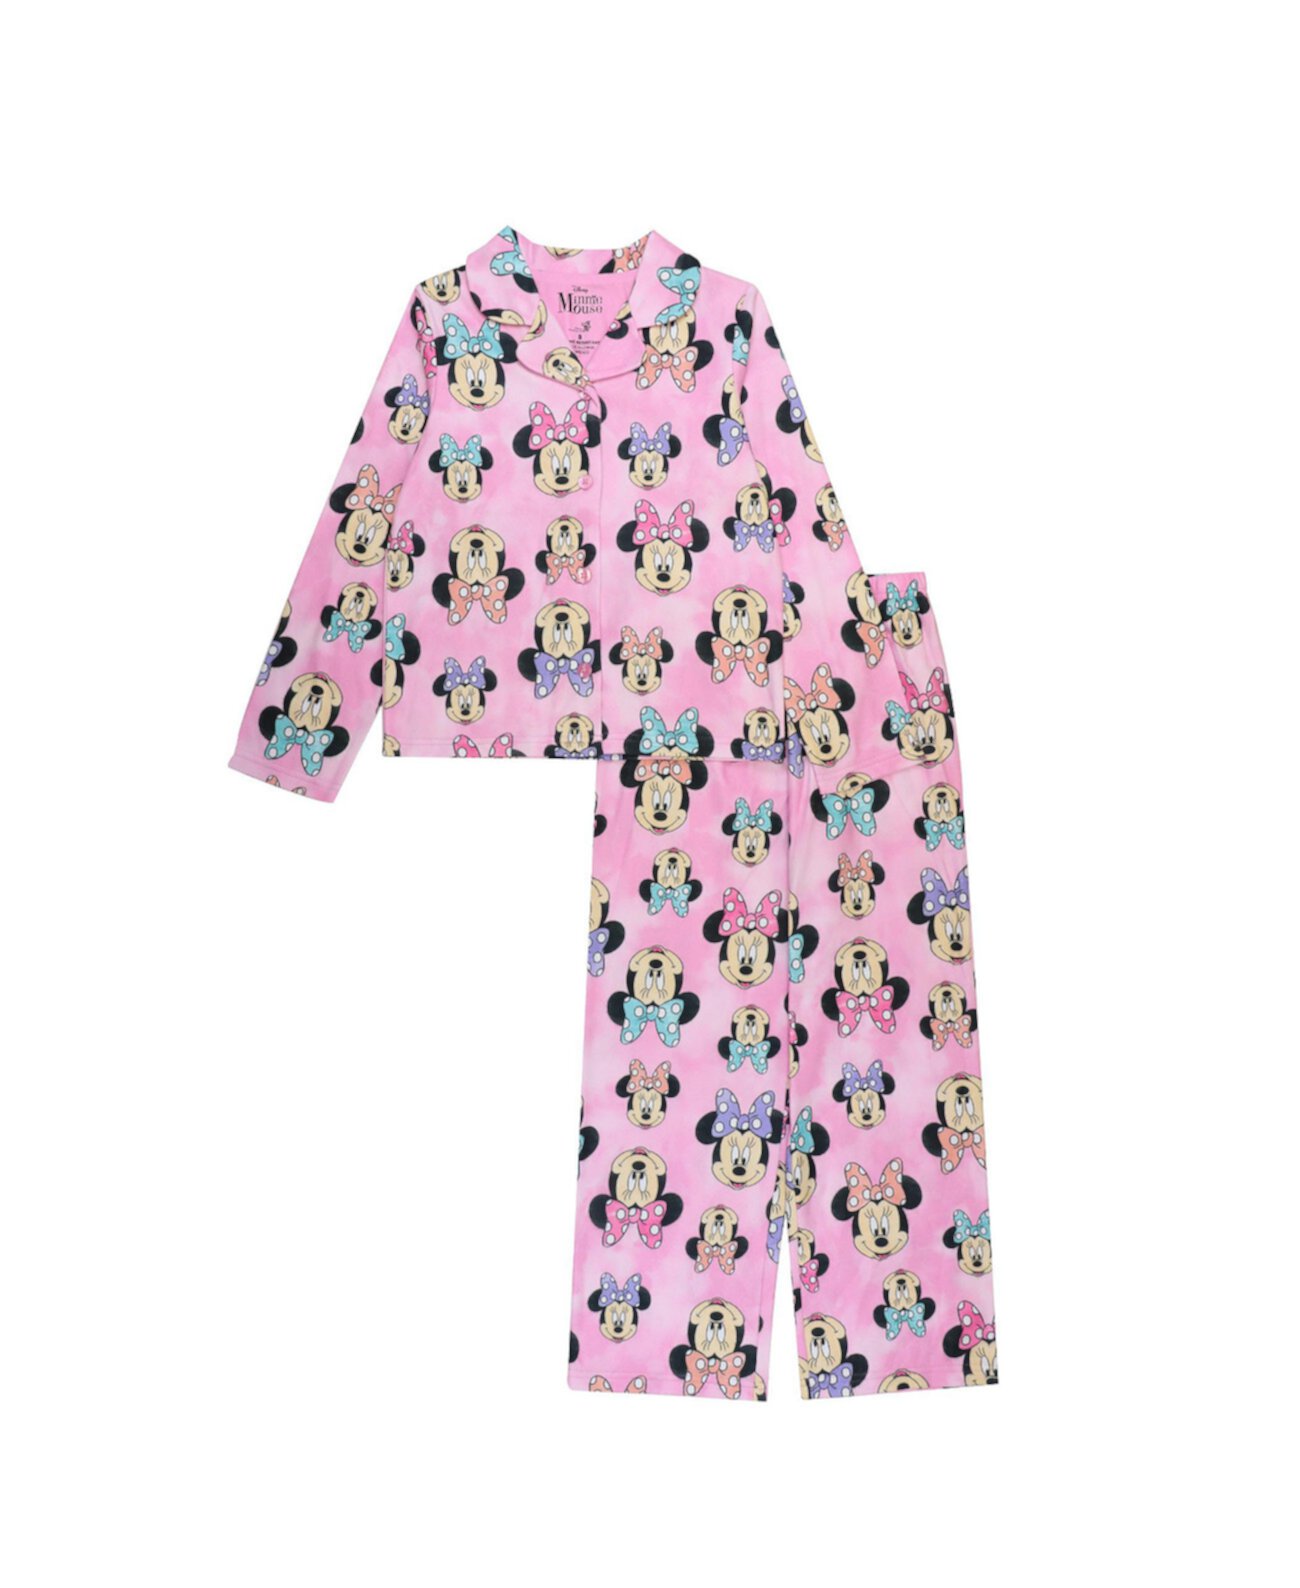 Топ и пижама для больших девочек, комплект из 2 предметов Minnie Mouse